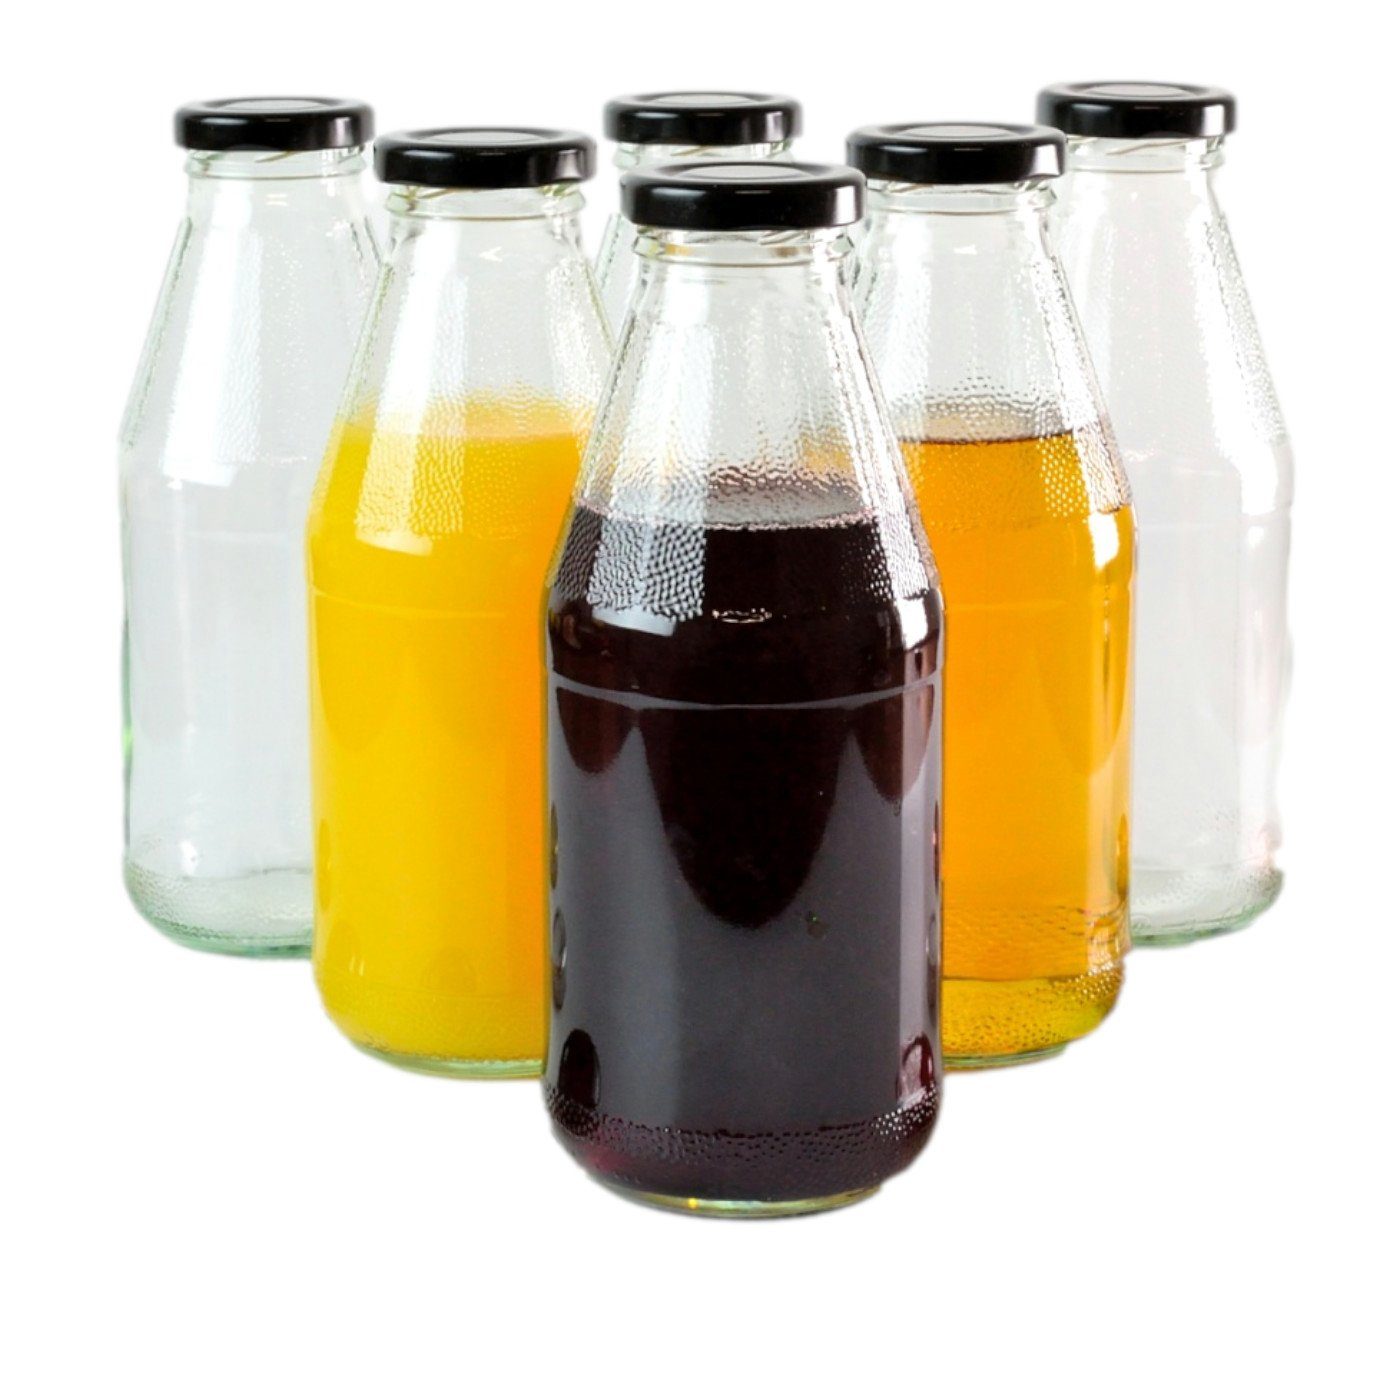 gouveo Trinkflasche Saftflaschen 500 ml mit Schraub-Deckel - Kleine Flasche 0,5 l, 6er Set, schwarz